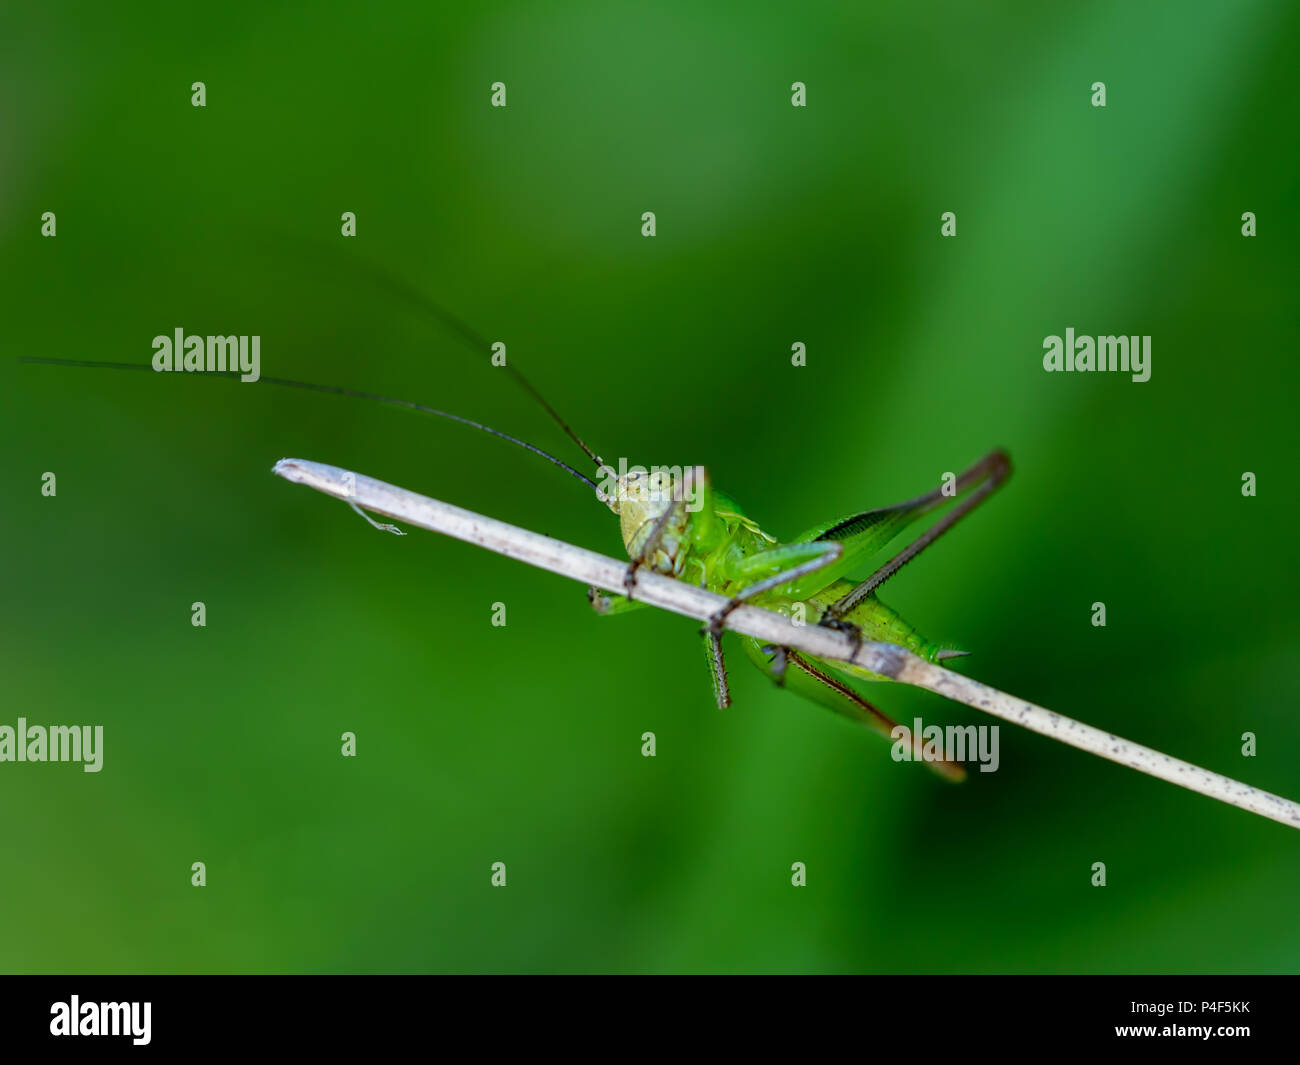 Cute babay cricket insecto. Parece desconfiar! Aferrándose a twig. Foto de stock